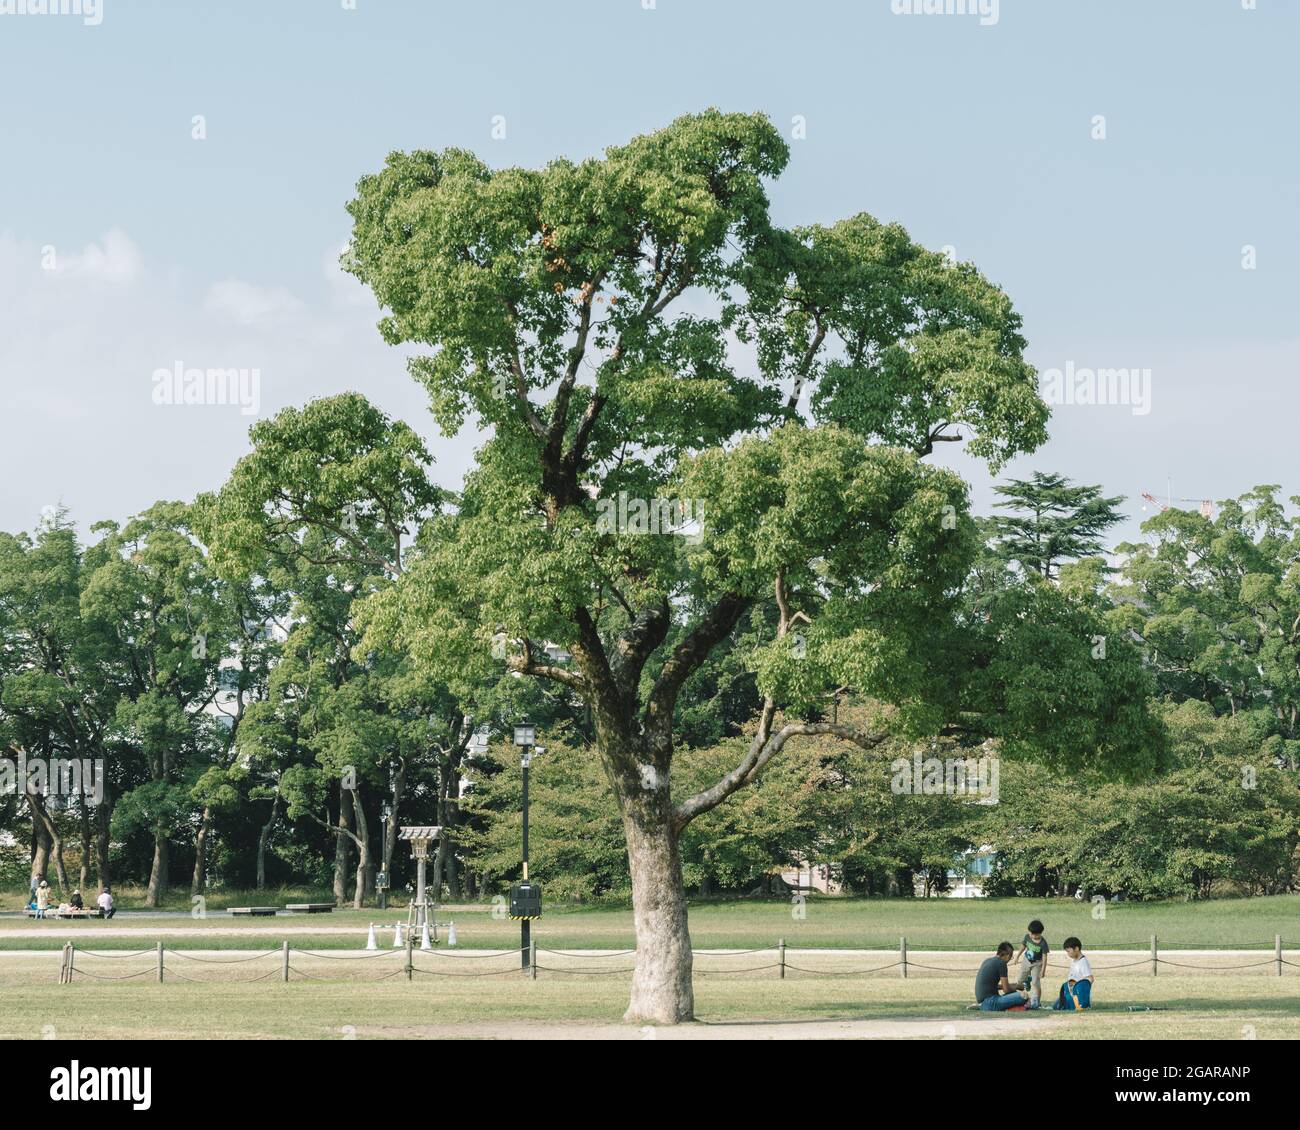 Fukuoka, Japon - Père et deux enfants se reposent sous l'arbre au parc Ohori, une oasis urbaine pour la région environnante. Banque D'Images